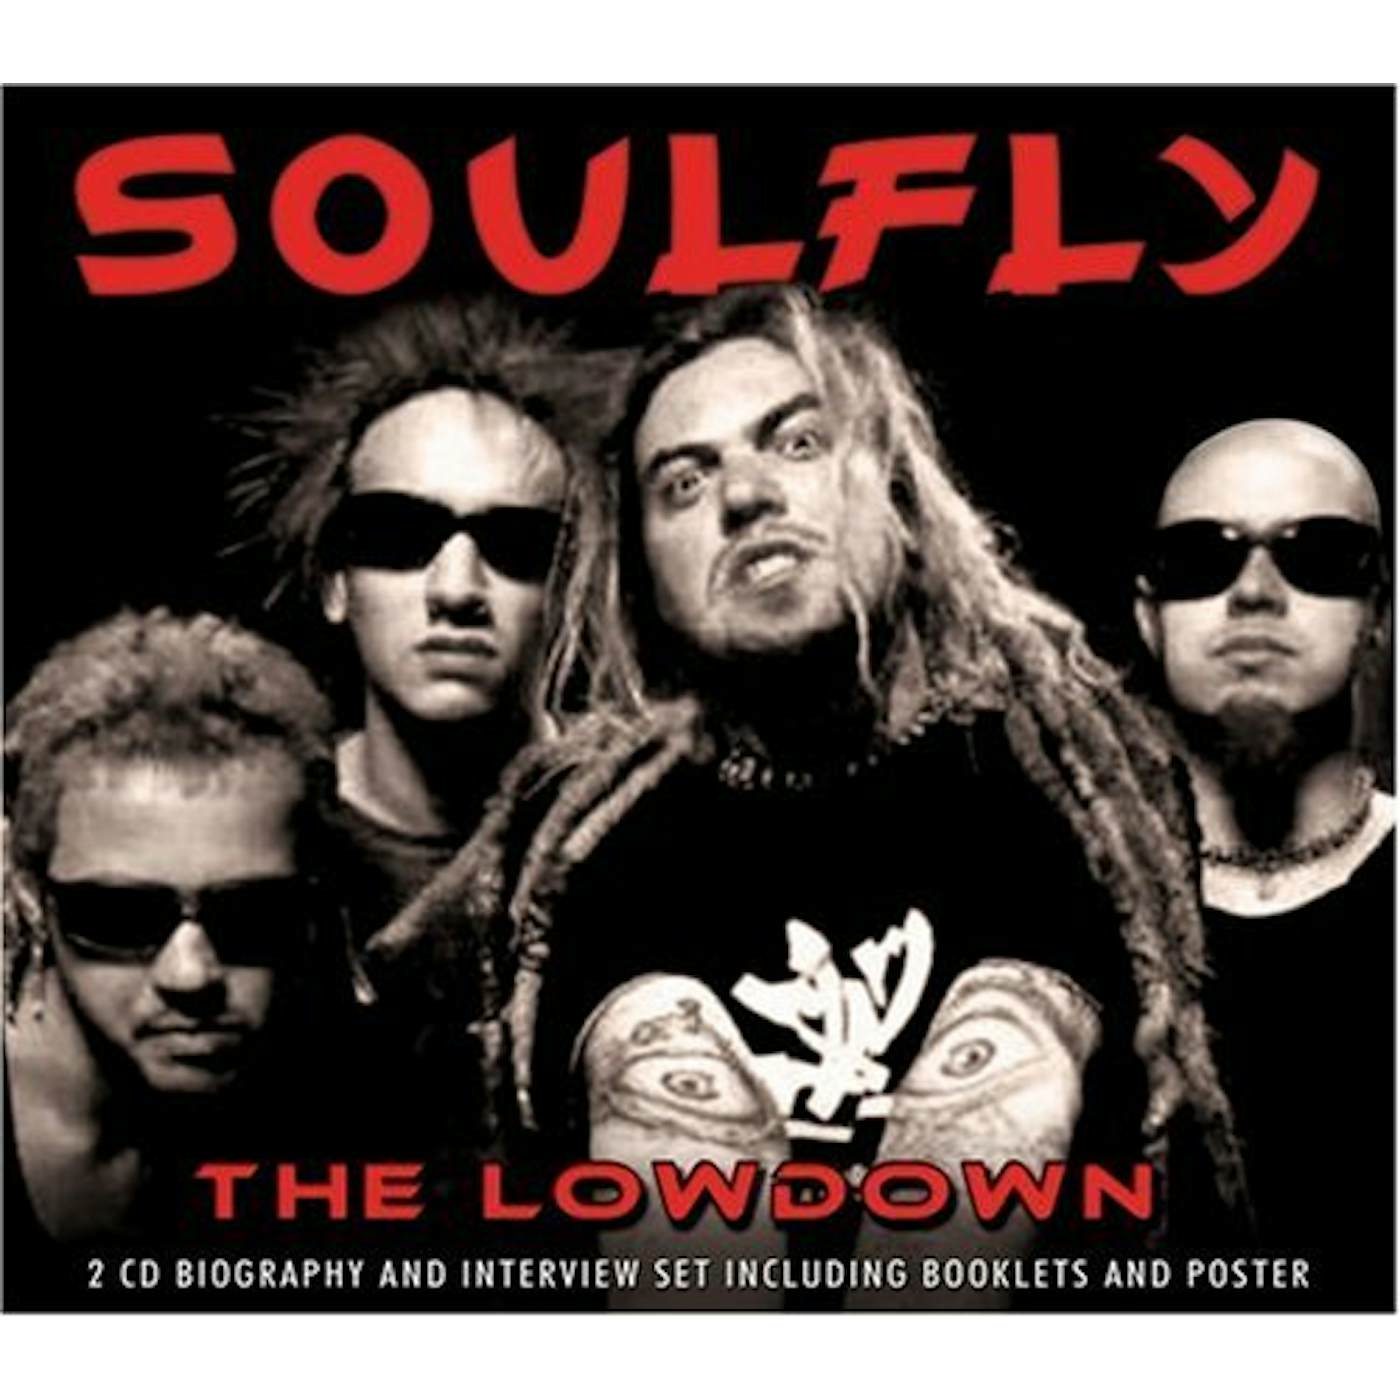 Soulfly LOWDOWN UNAUTHORIZED CD